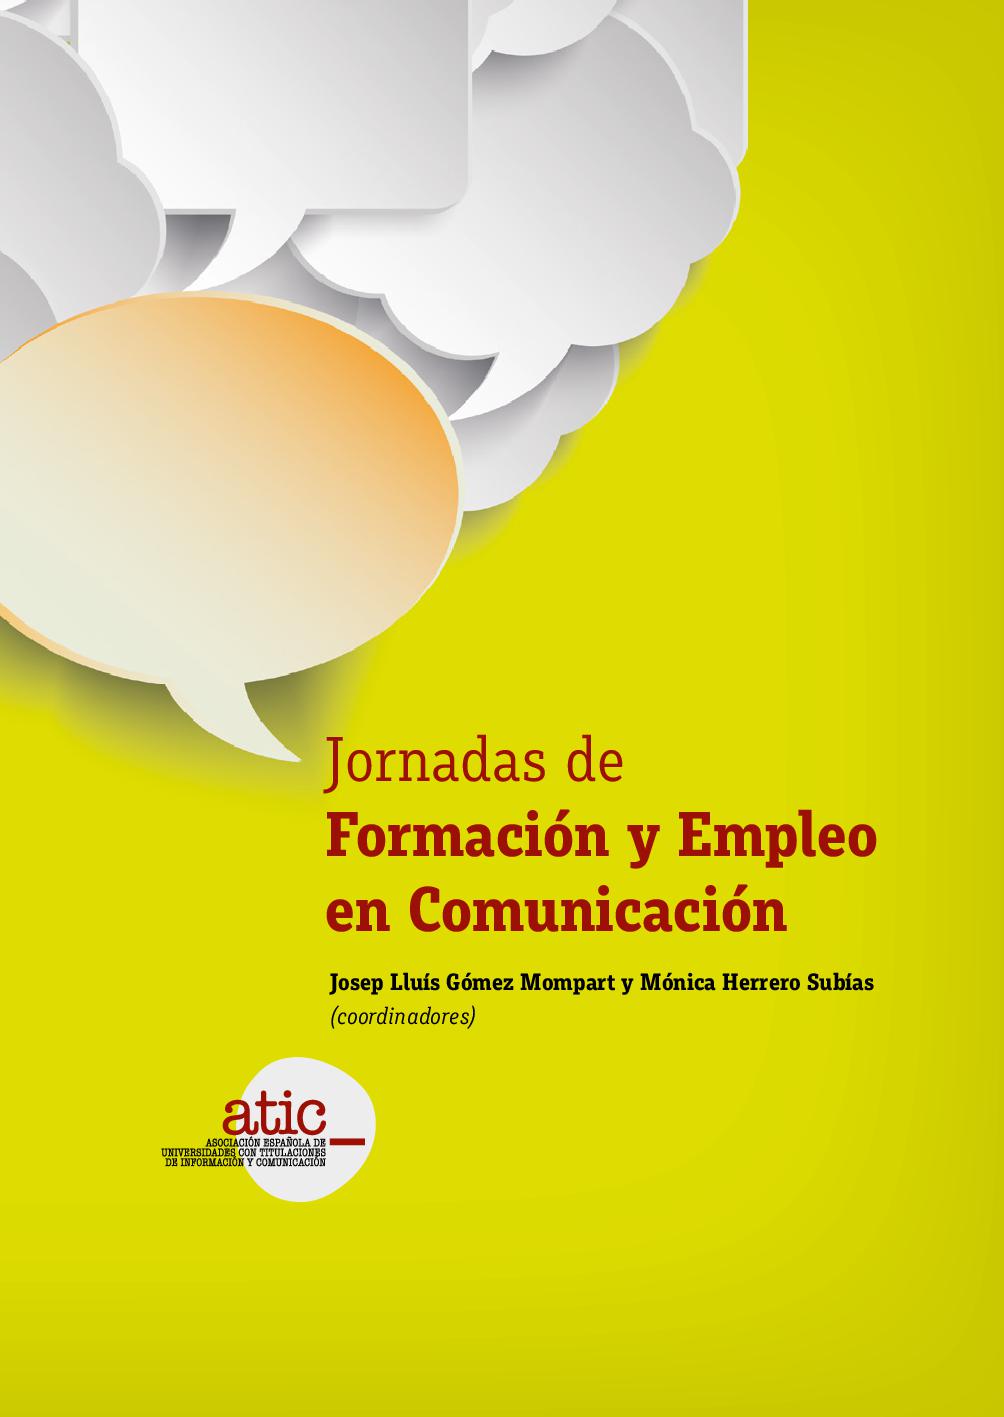 Imagen de portada del libro Jornadas de Formación y Empleo en Comunicación